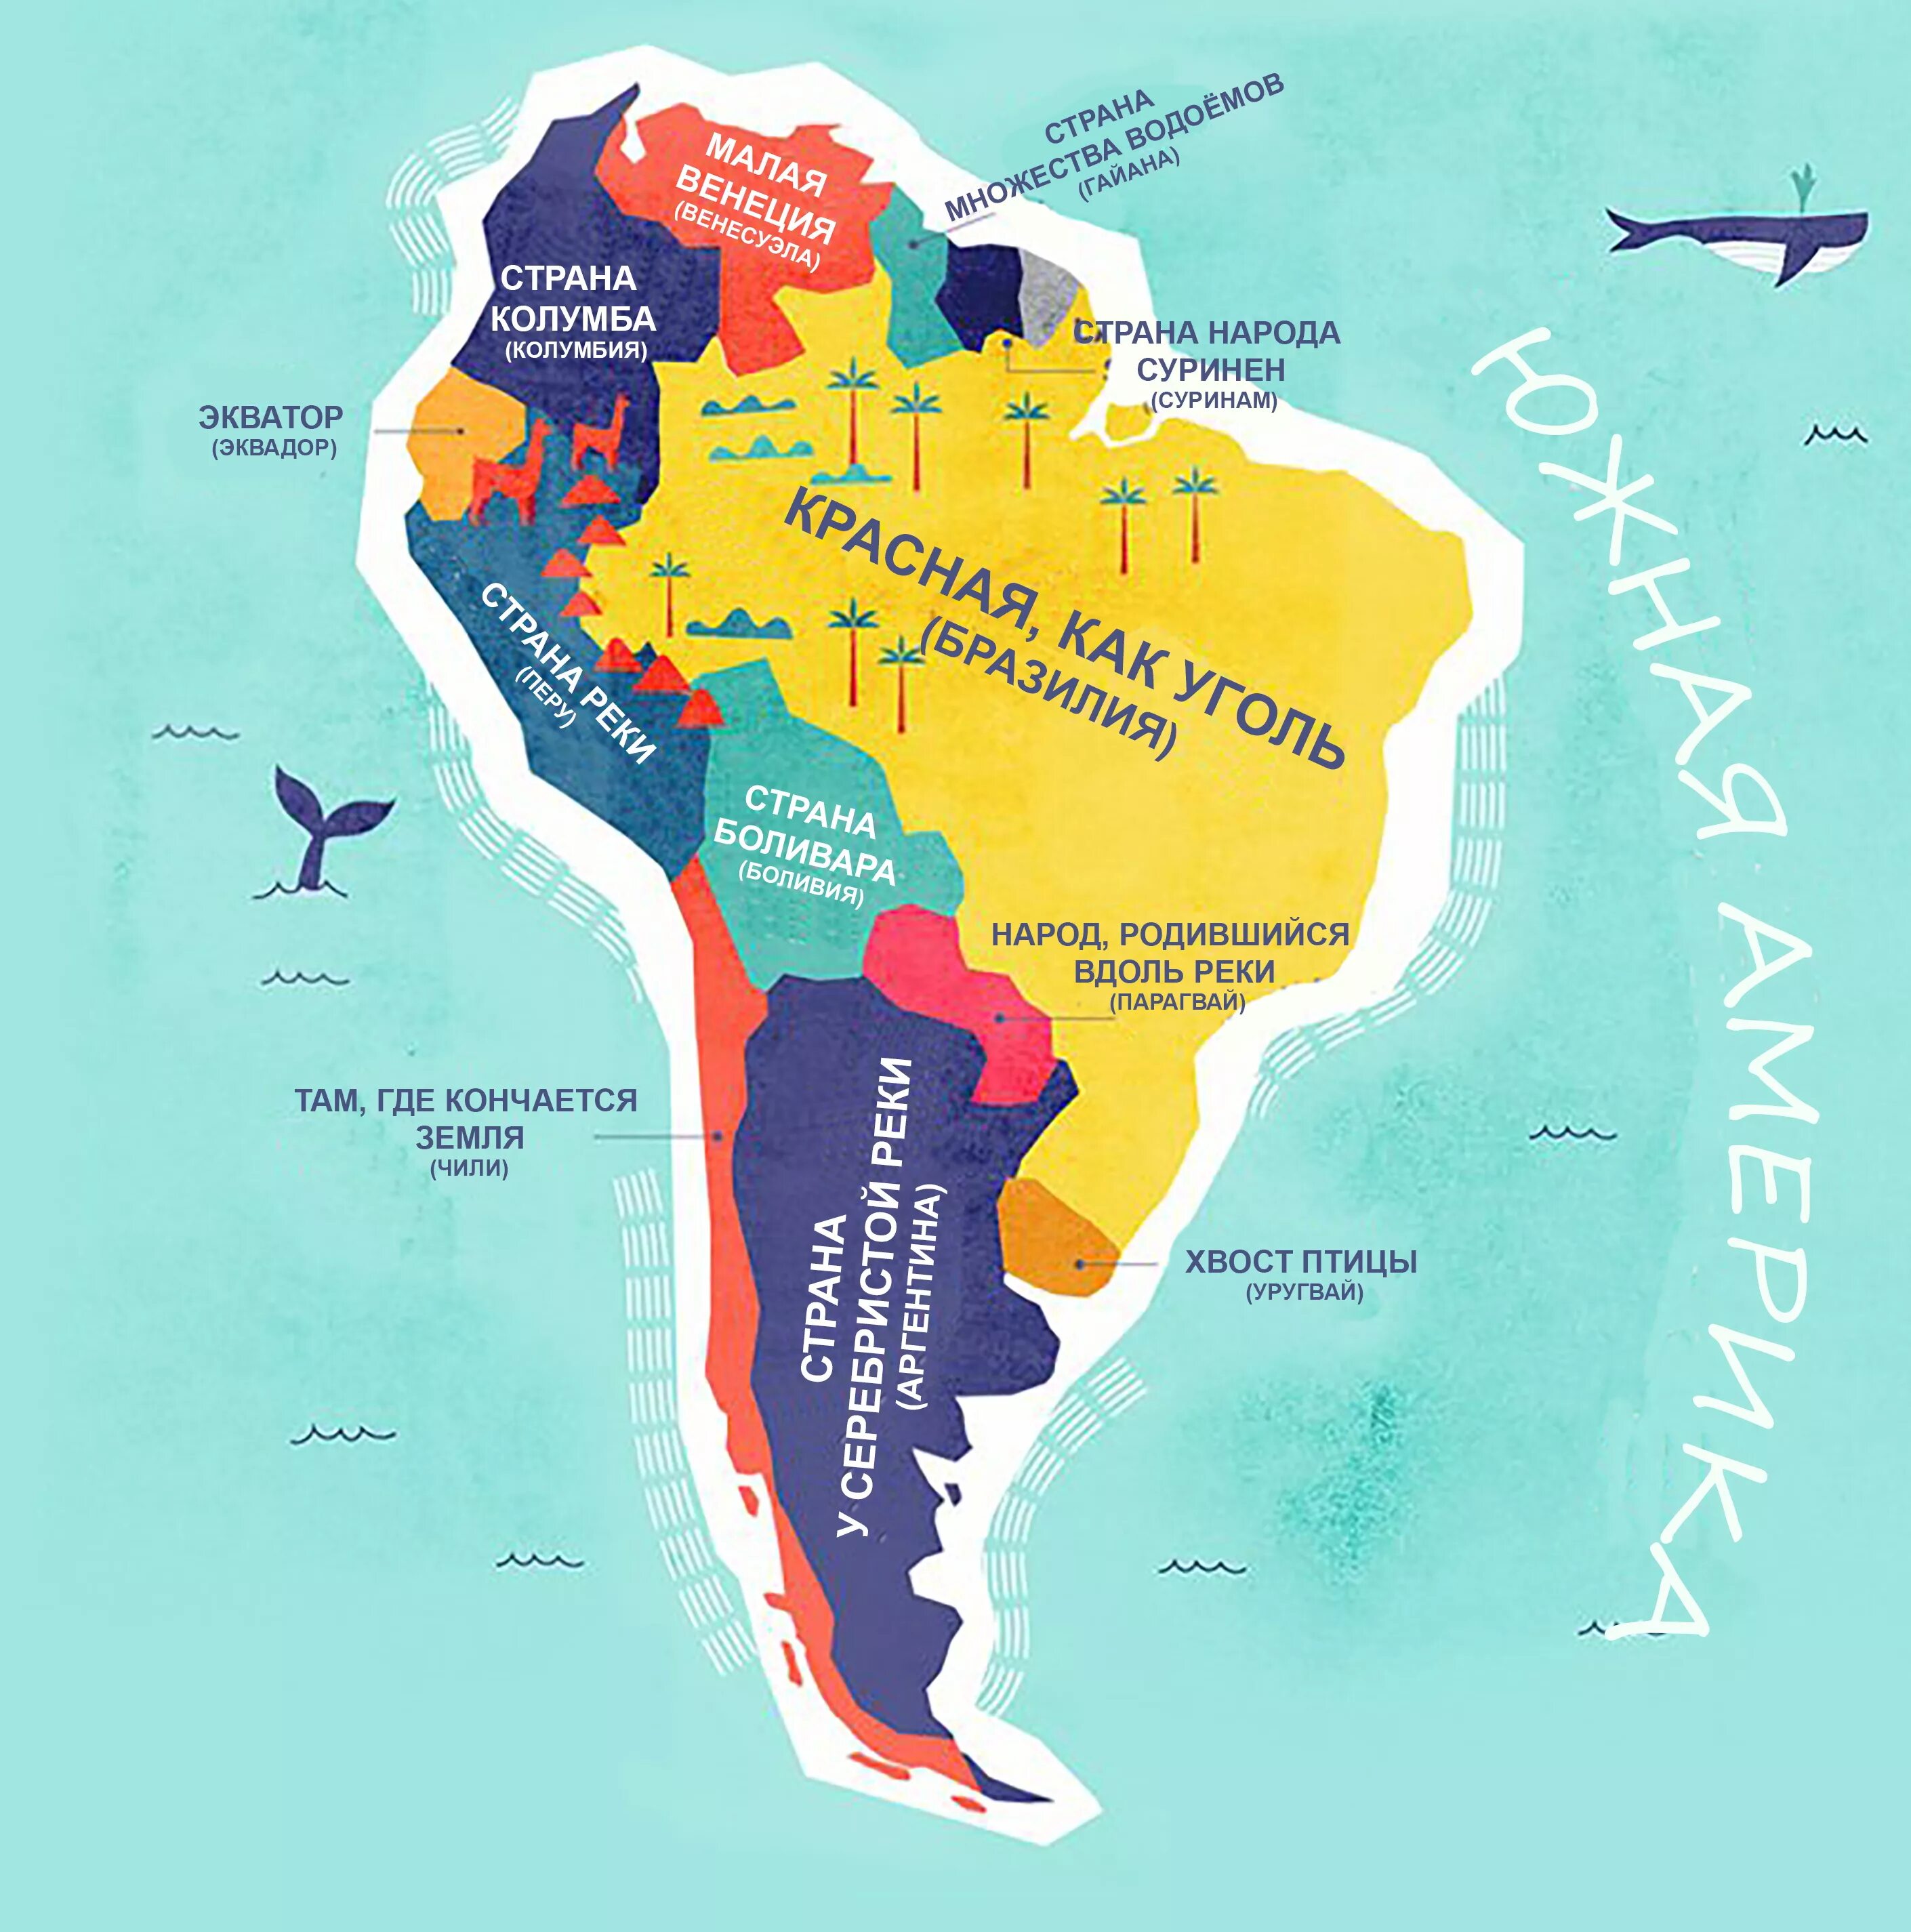 Карта Южной Америки с названиями стран. Карта стран Южная Америка с названиями страны. Государства Южной Америки на карте. Карта Южной Америки со странами. Перевод названий стран